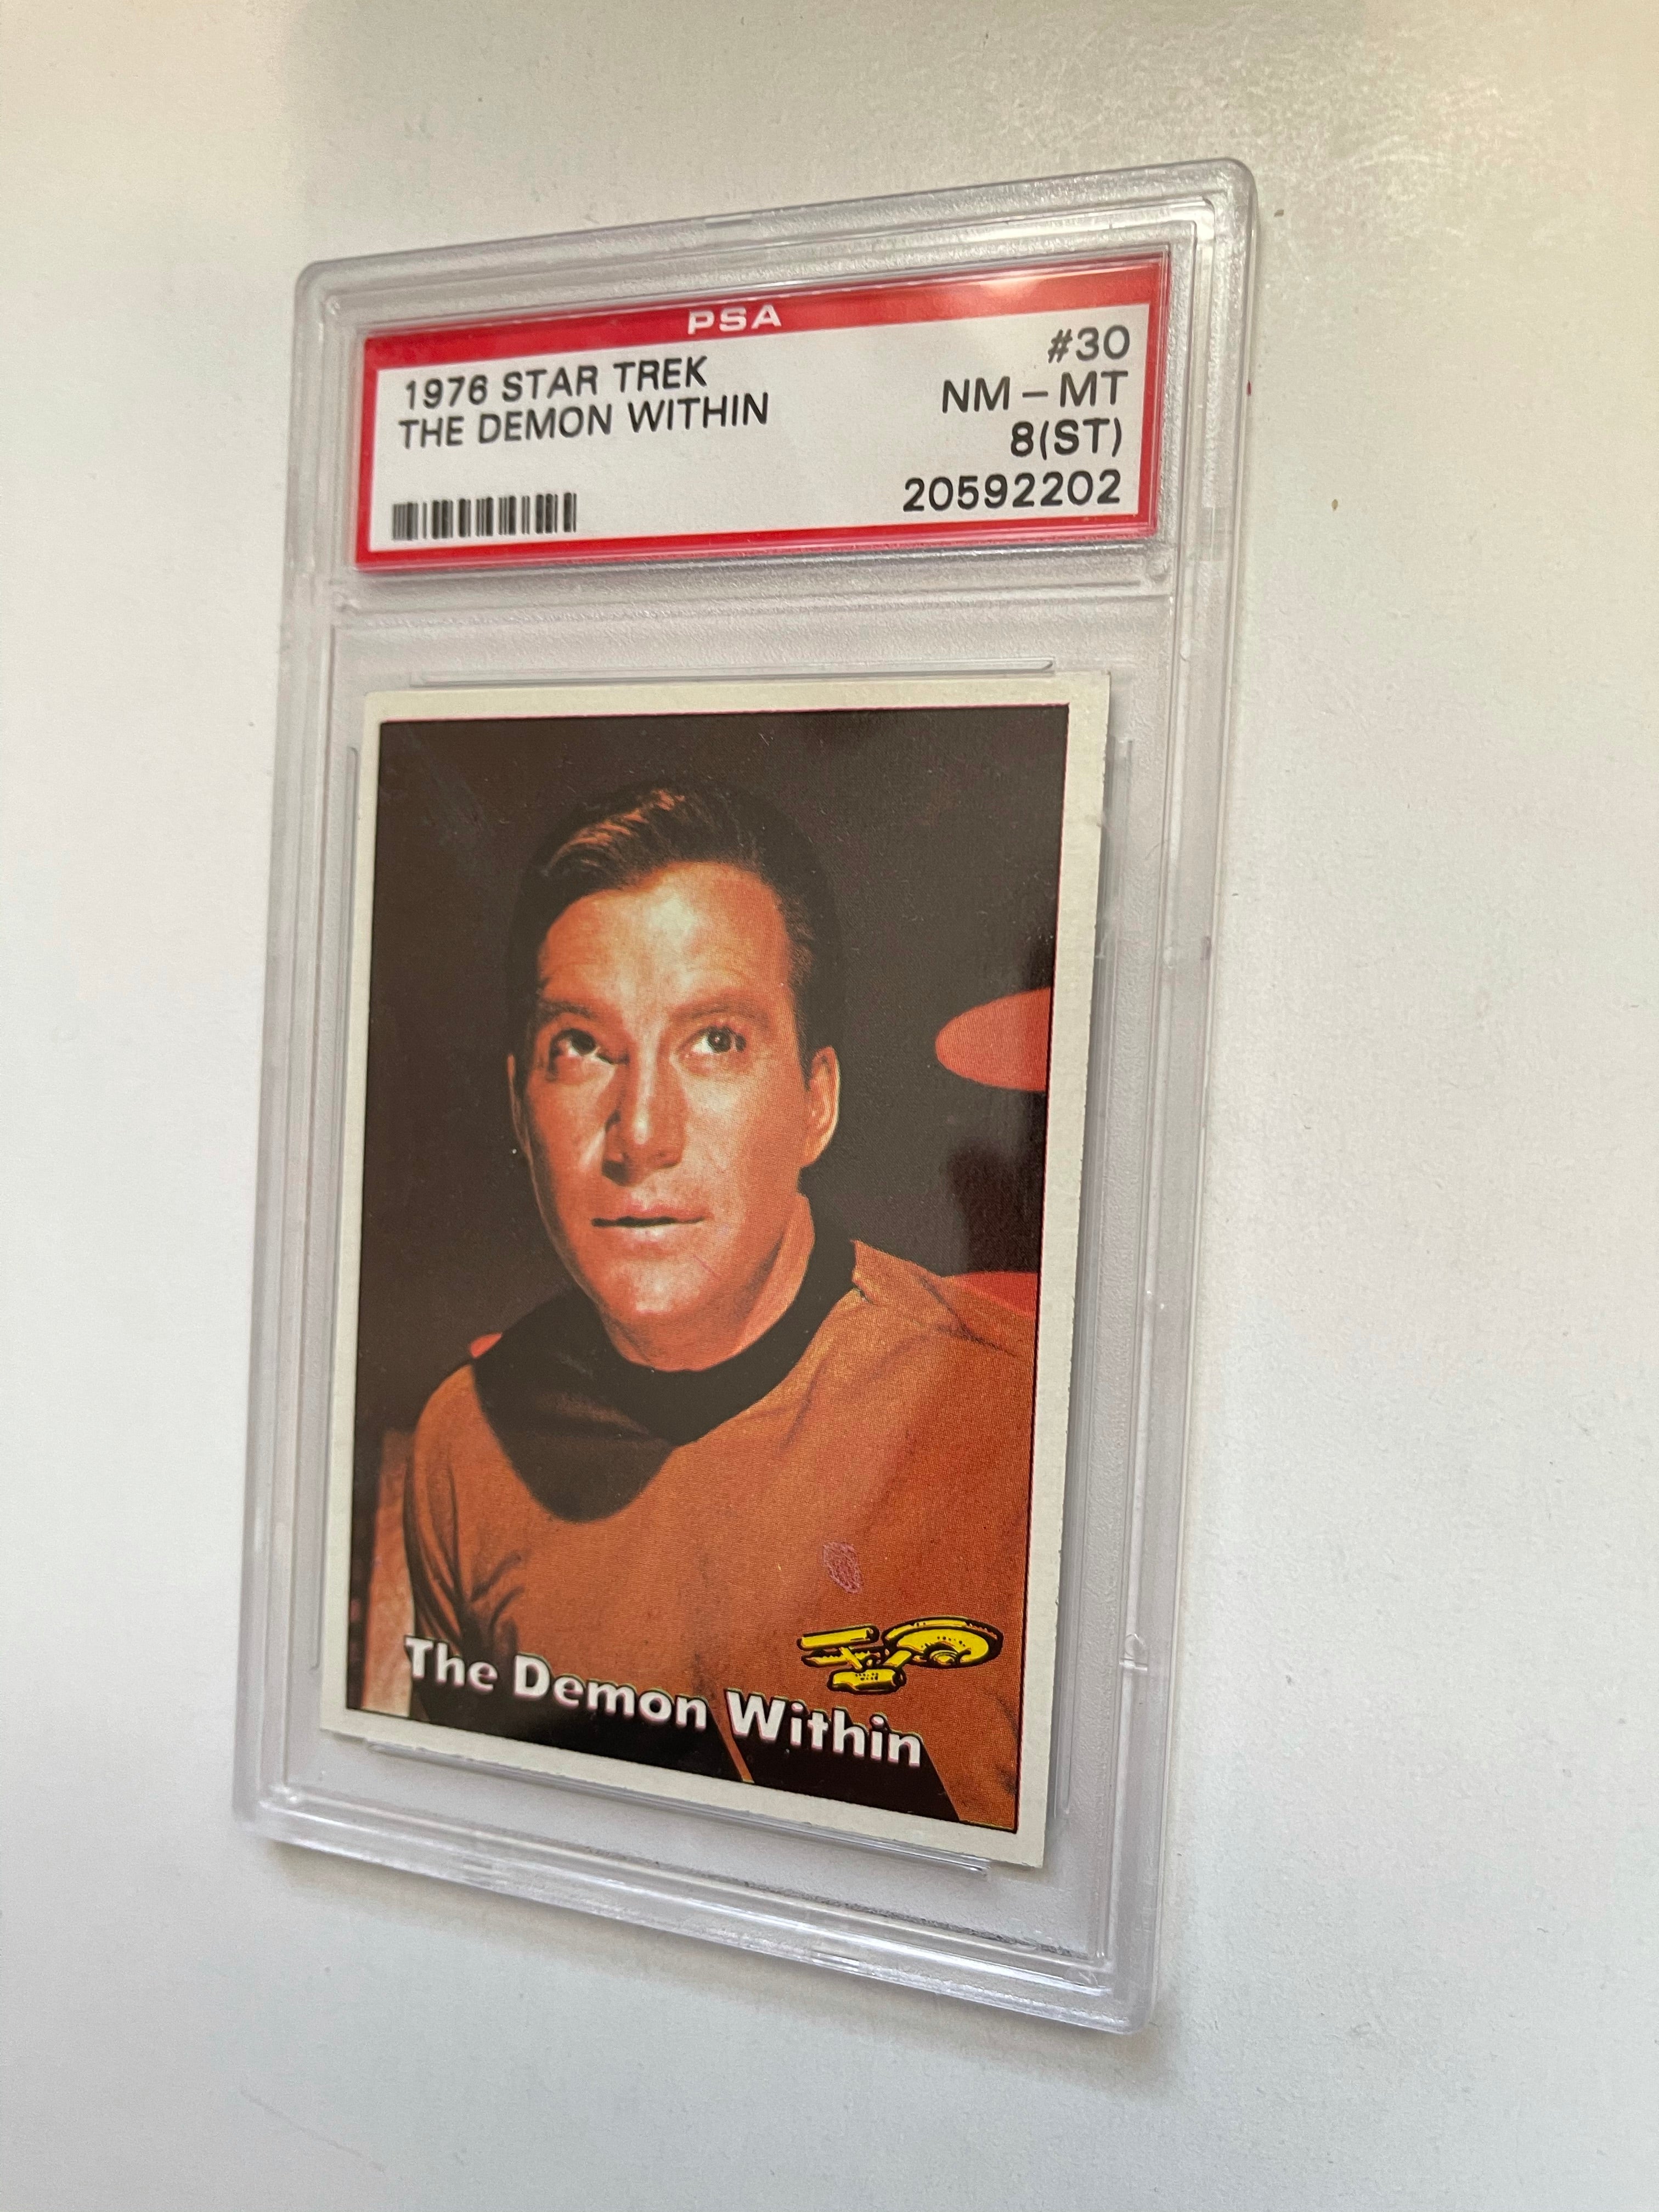 Star Trek Captain Kirk PSA 8 graded Star Trek card 1976